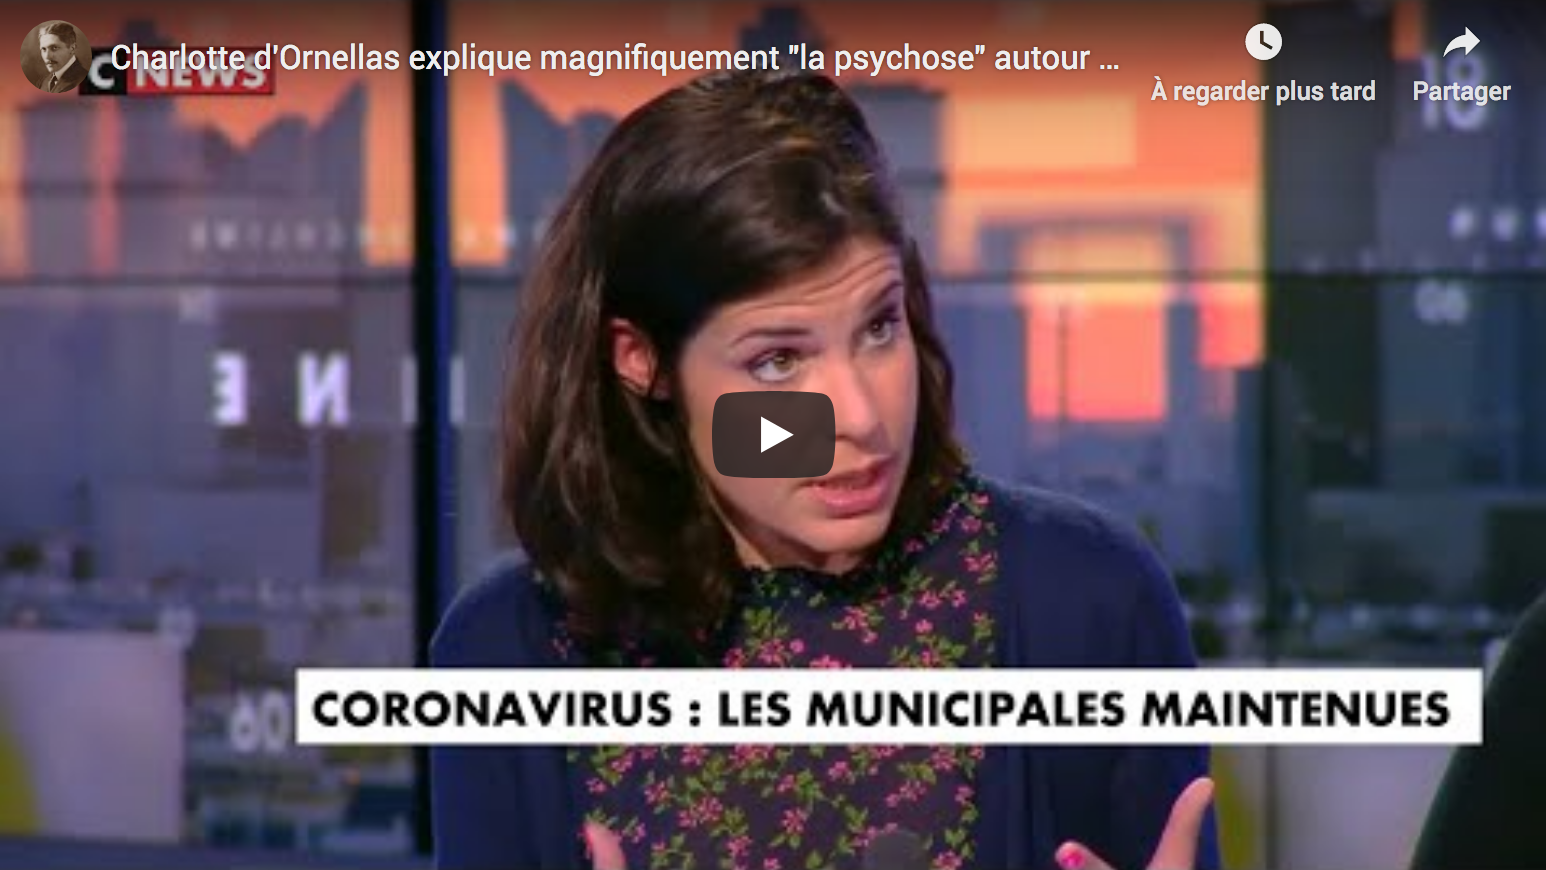 Charlotte d’Ornellas explique magnifiquement “la psychose” autour du Coronavirus (VIDÉO)